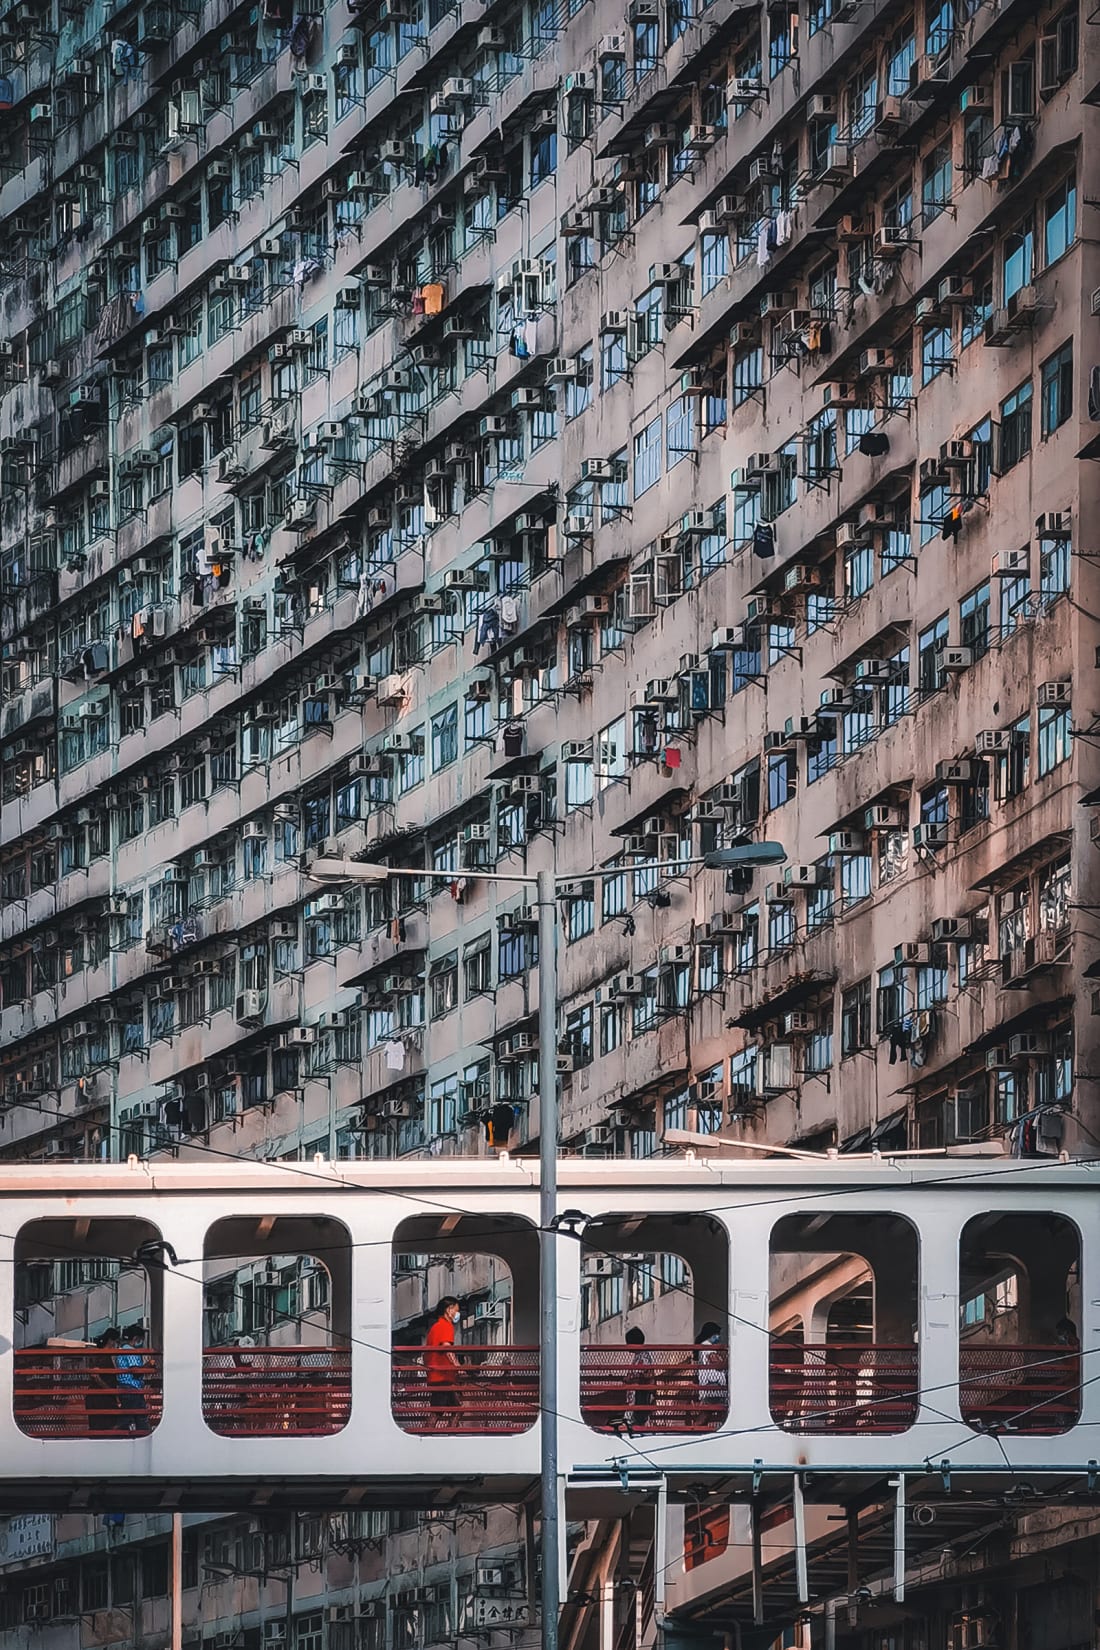 Hình ảnh của William Shum về khu vực Vịnh Quarry dân cư đông đúc của Hồng Kông cũng lọt vào danh sách rút gọn trong danh mục di động, năm nay có chủ đề xoay quanh những cây cầu